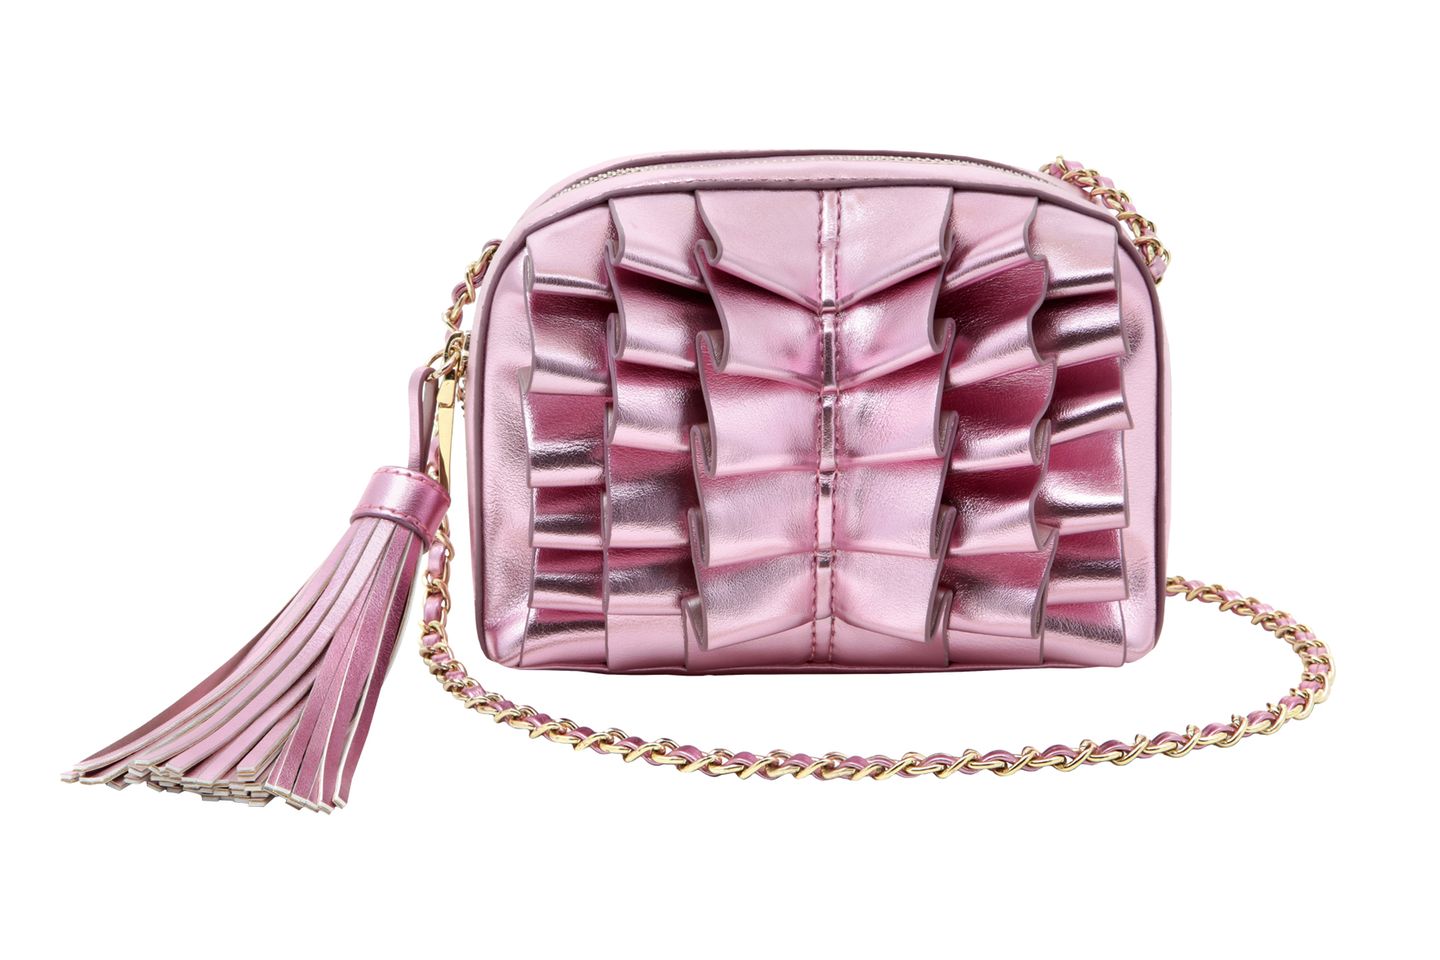 Spiegelblank aufgerüscht: Tasche in Rosa von Blugirl, ca. 120 Euro